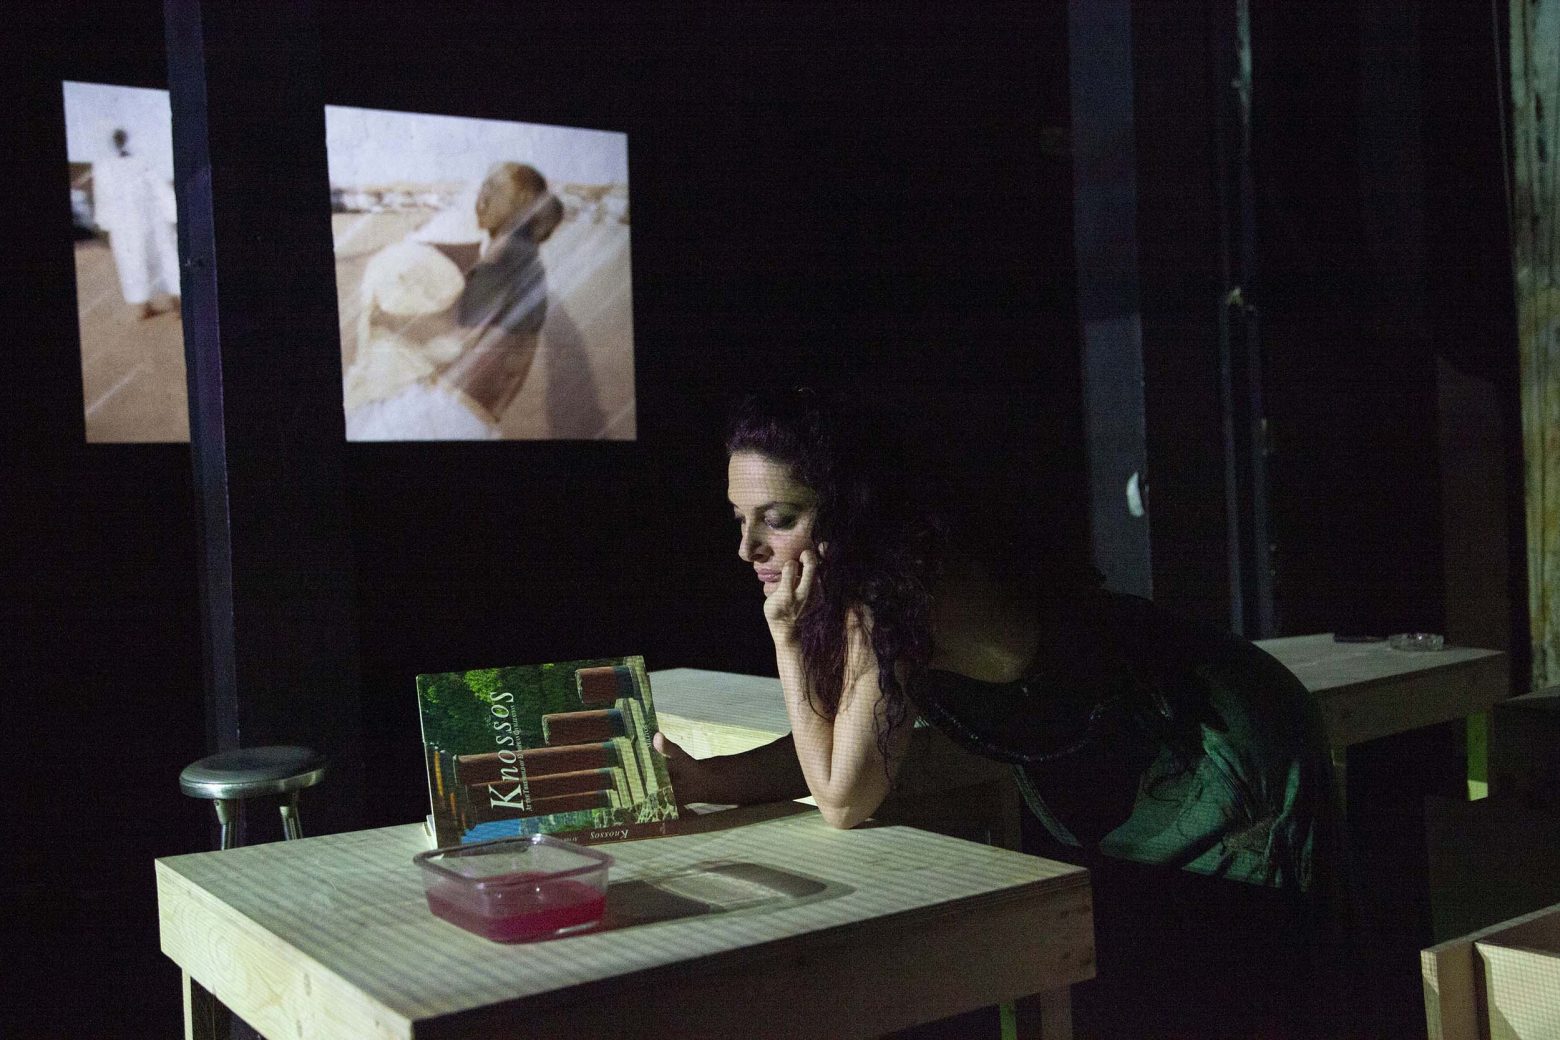 Η Ρούλα Πατεράκη σκηνοθετεί έργο της Νίκης Τριανταφυλλίδη στο θέατρο Φούρνος